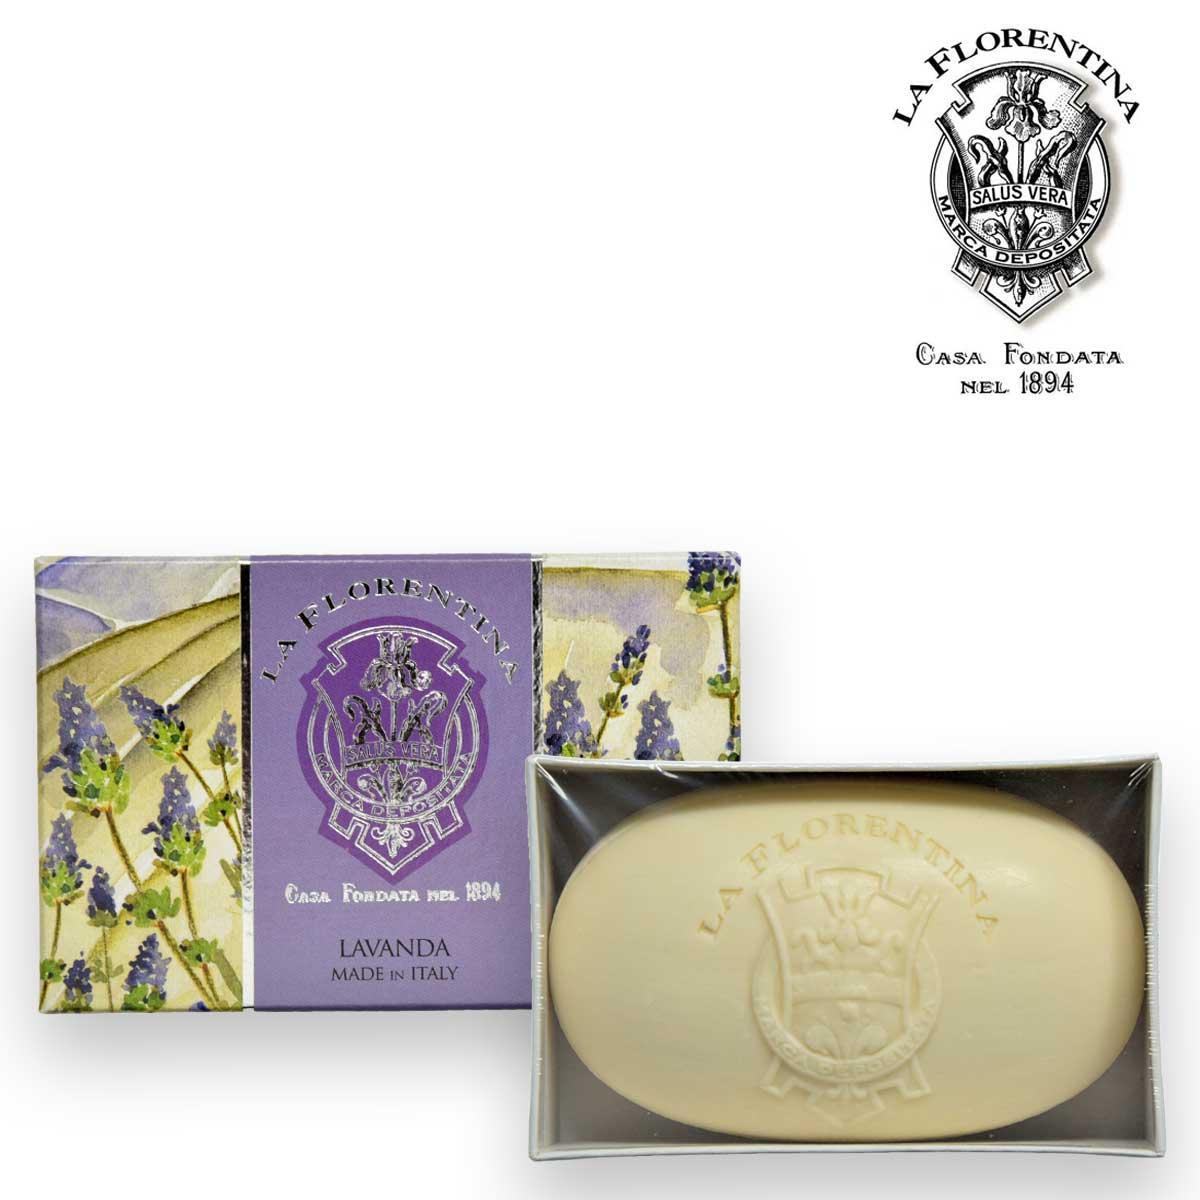 La florentina box soap 300gr lavanda